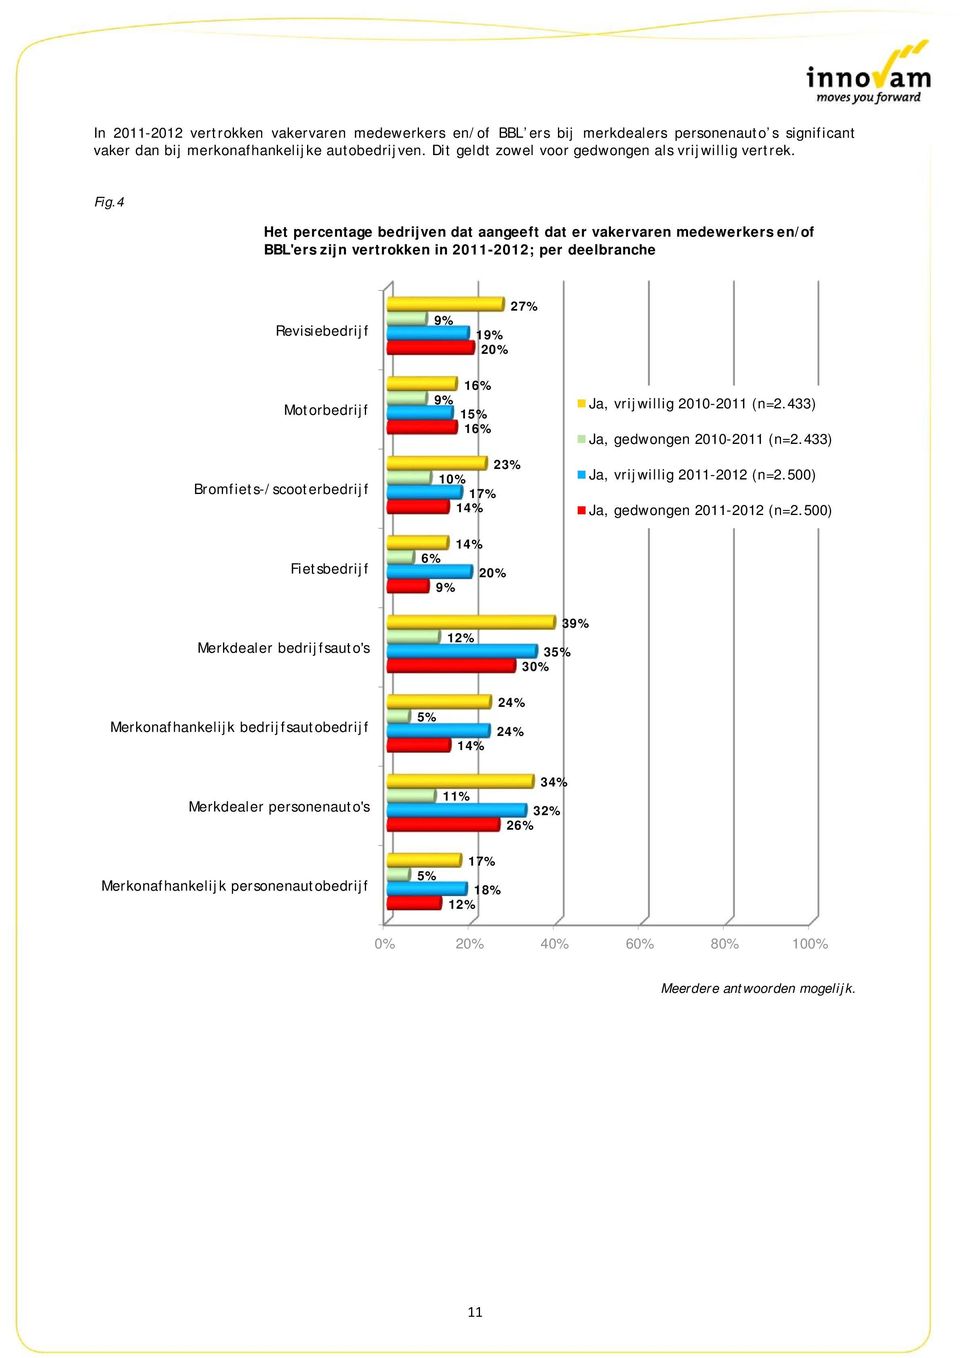 4 Het percentage bedrijven dat aangeeft dat er vakervaren medewerkers en/of BBL'ers zijn vertrokken in 2011-2012; per deelbranche Revisiebedrijf 9% 19% 2 27% Motorbedrijf Bromfiets-/scooterbedrijf